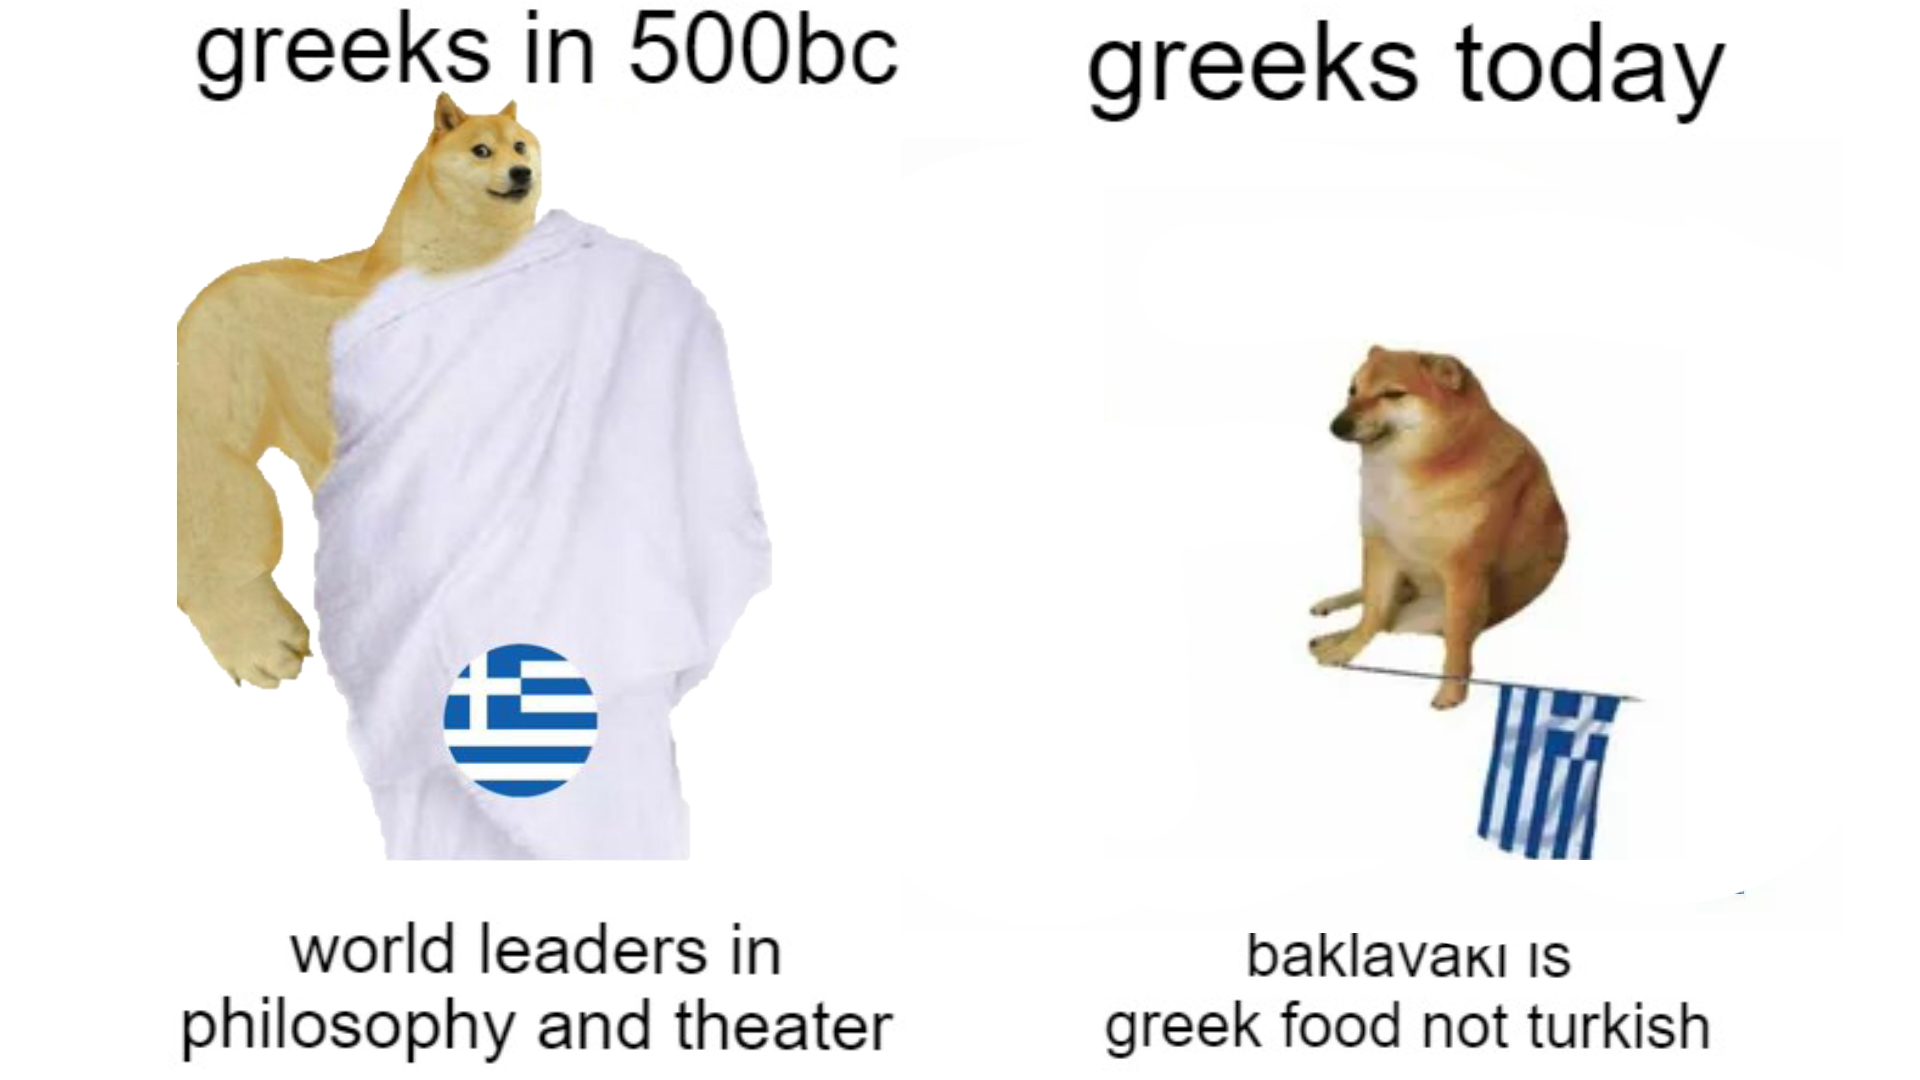 oh those greeks